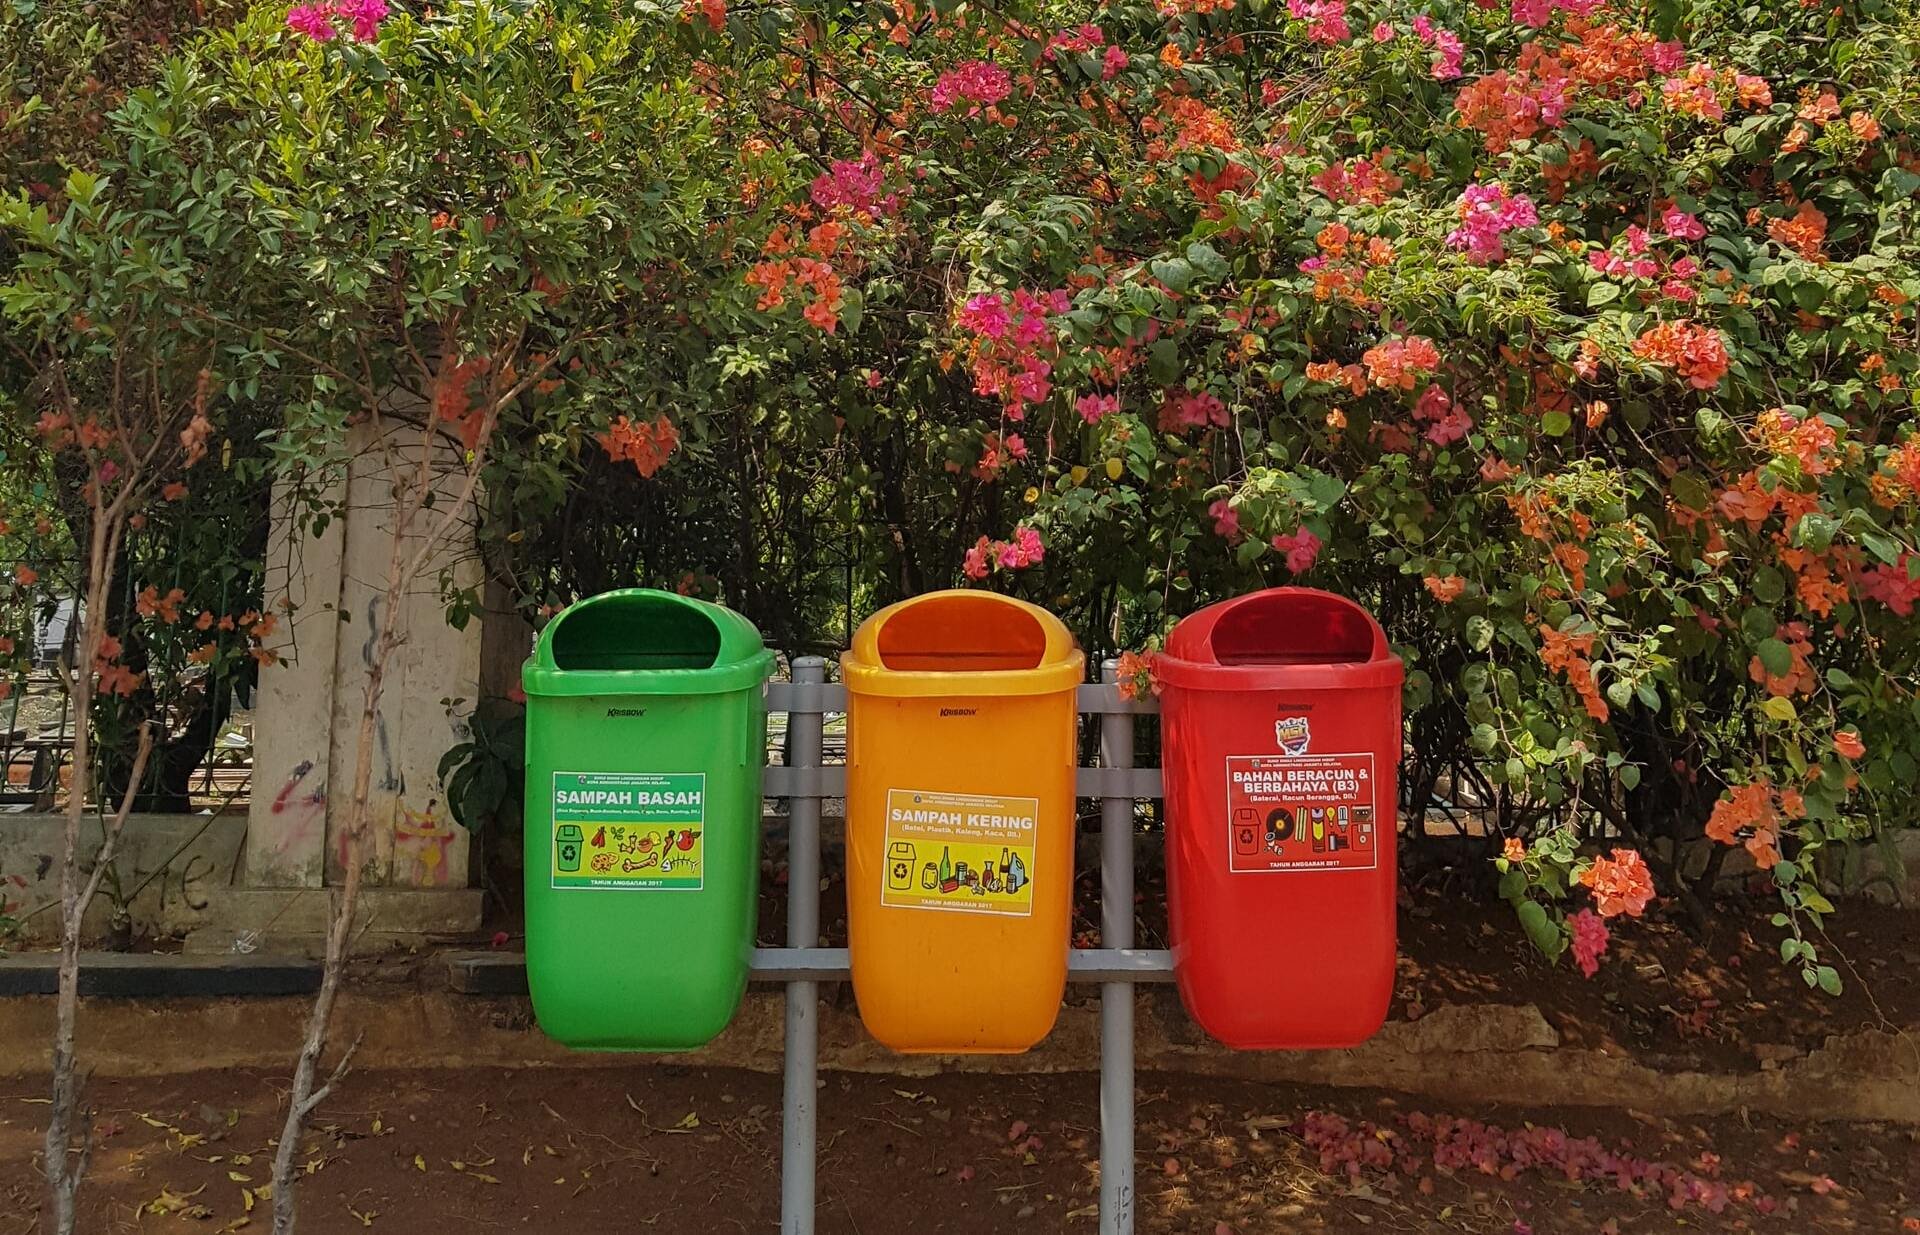 Três latas de lixo nas cores verde, amarela e vermelha.